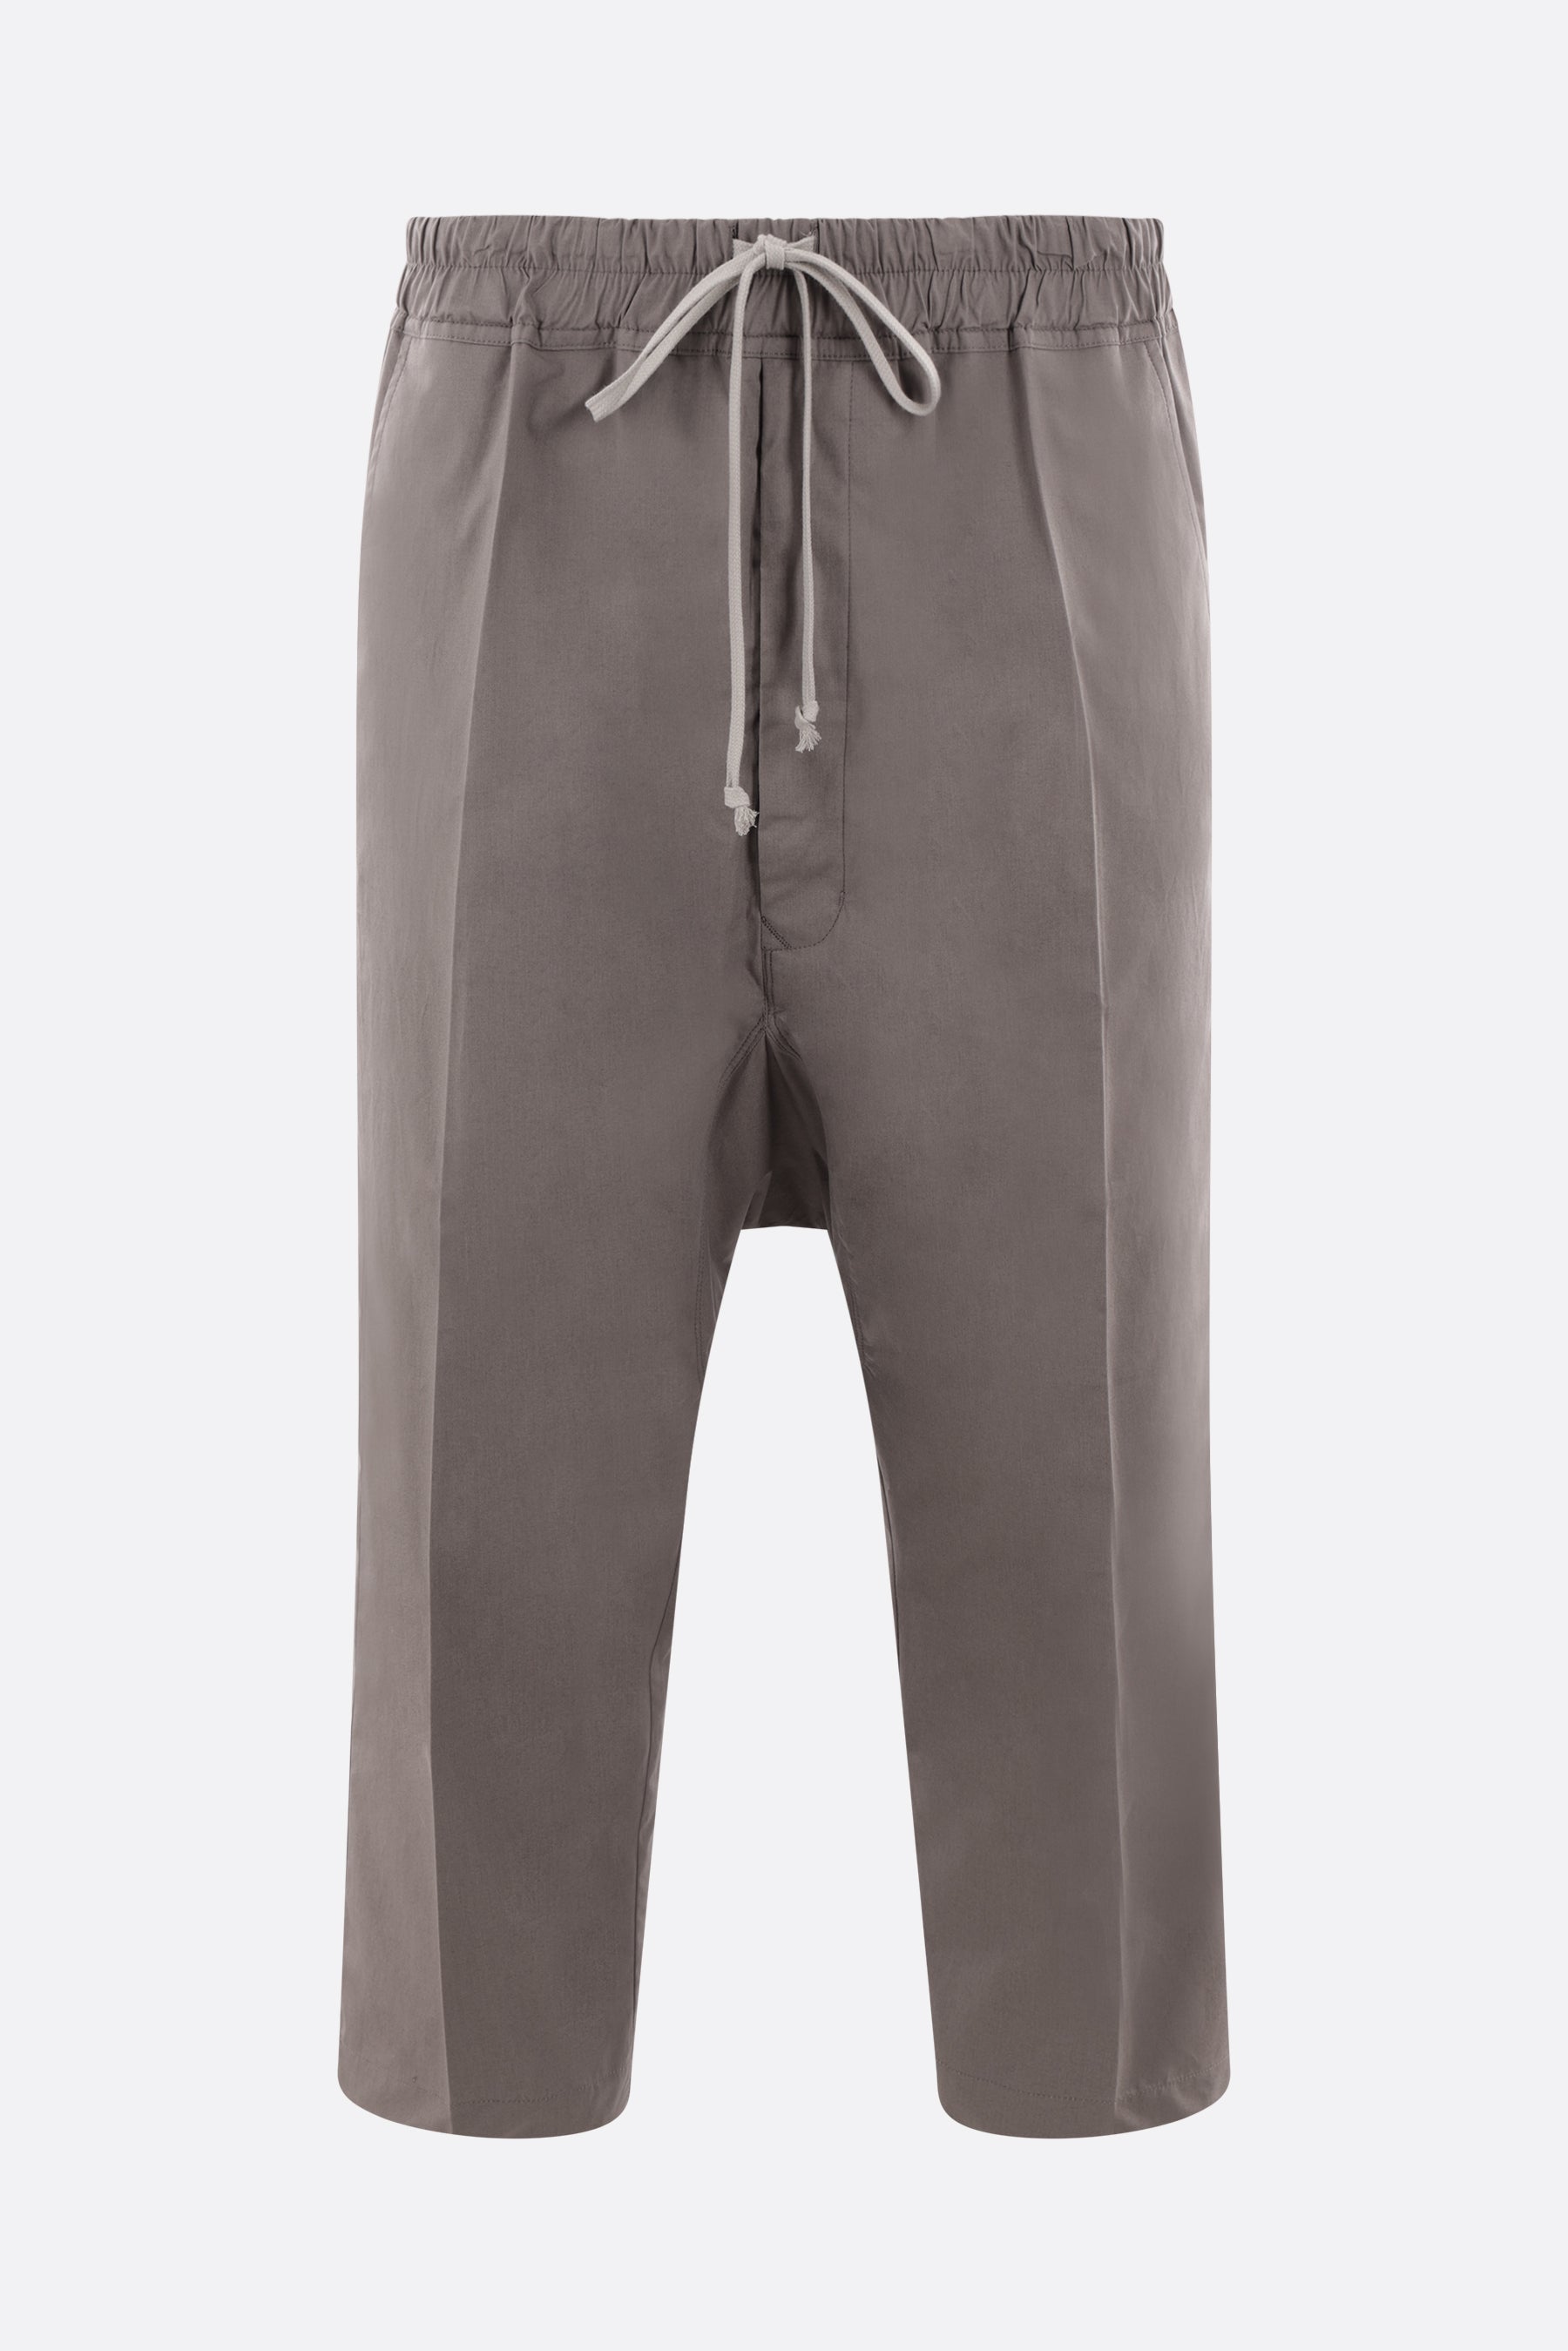 pantalone cropped in cotone organico